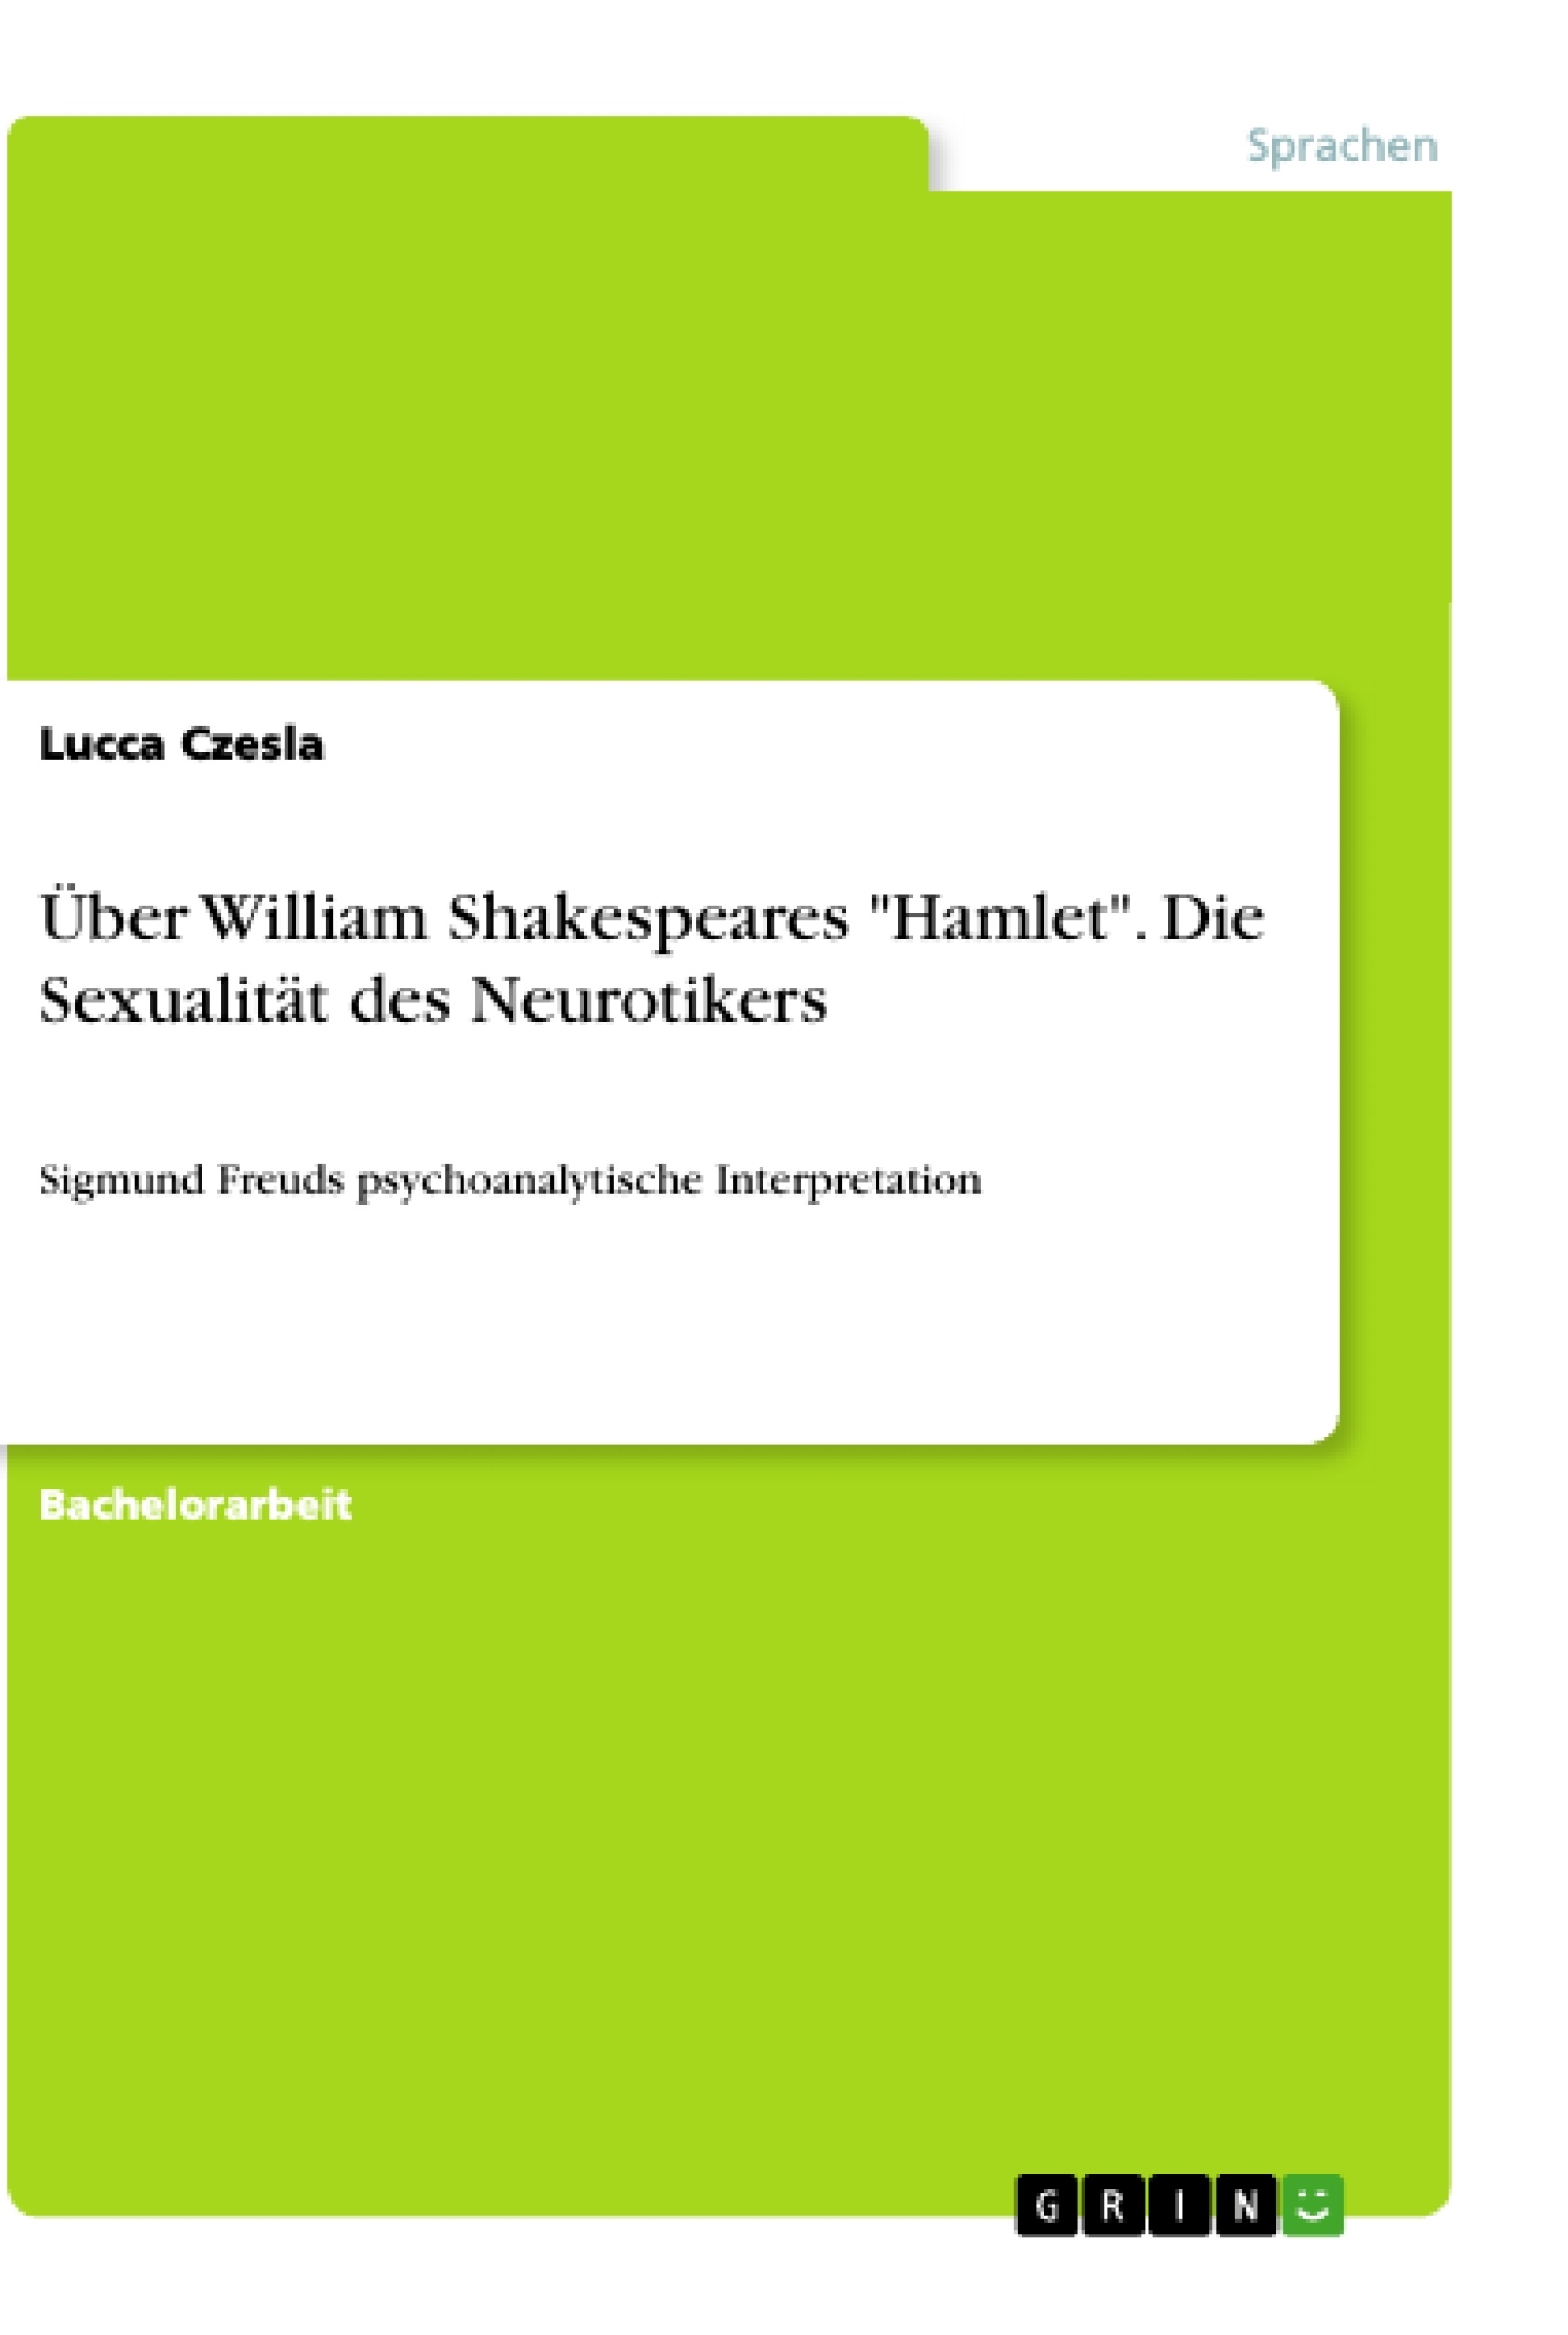 Titre: Über William Shakespeares "Hamlet". Die Sexualität des Neurotikers